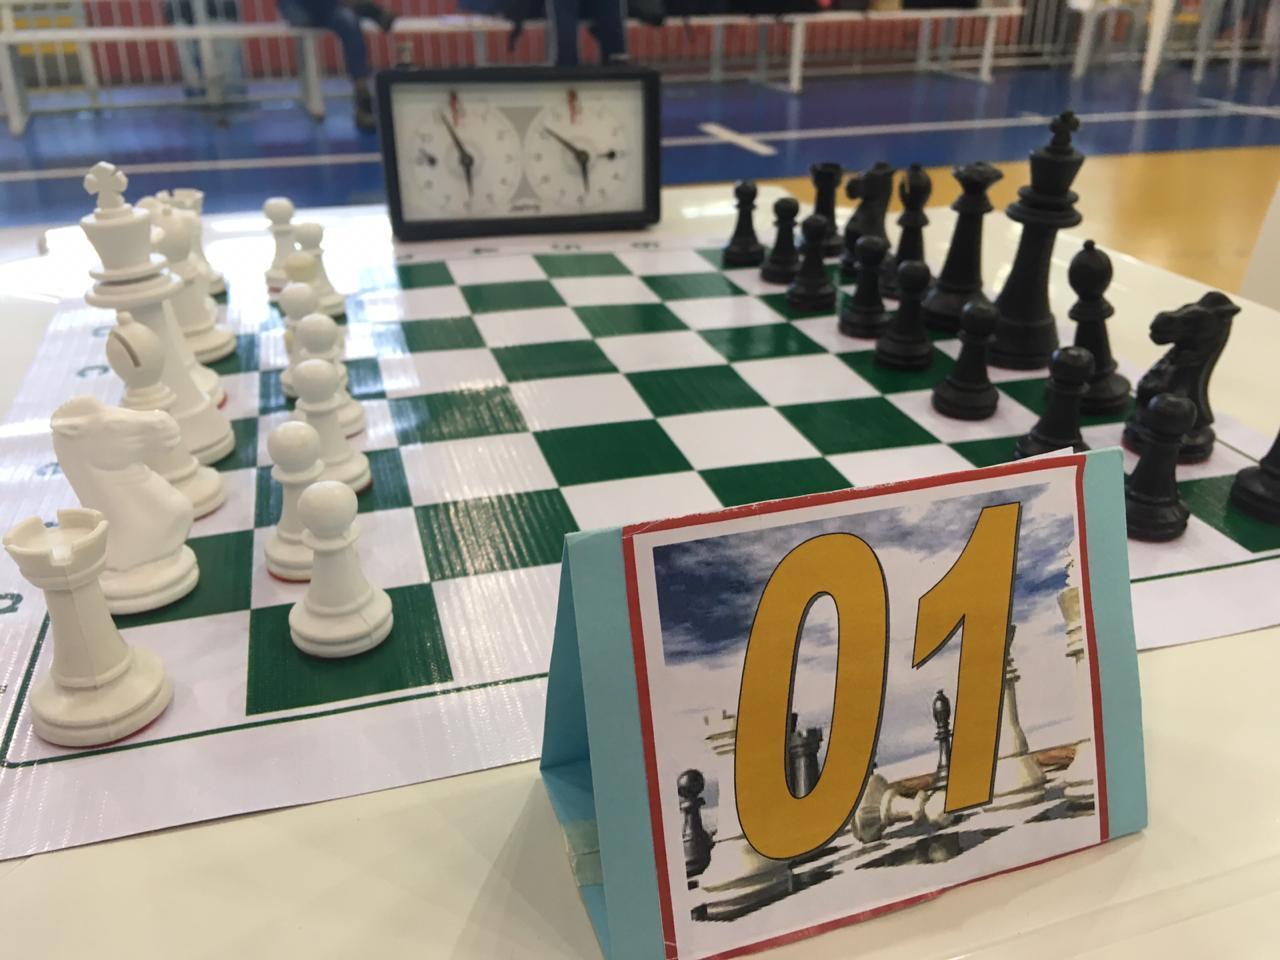 Campeões apontam falhas nas jogadas de xadrez de 'O Sétimo Selo' -  23/07/2015 - Ilustrada - Folha de S.Paulo